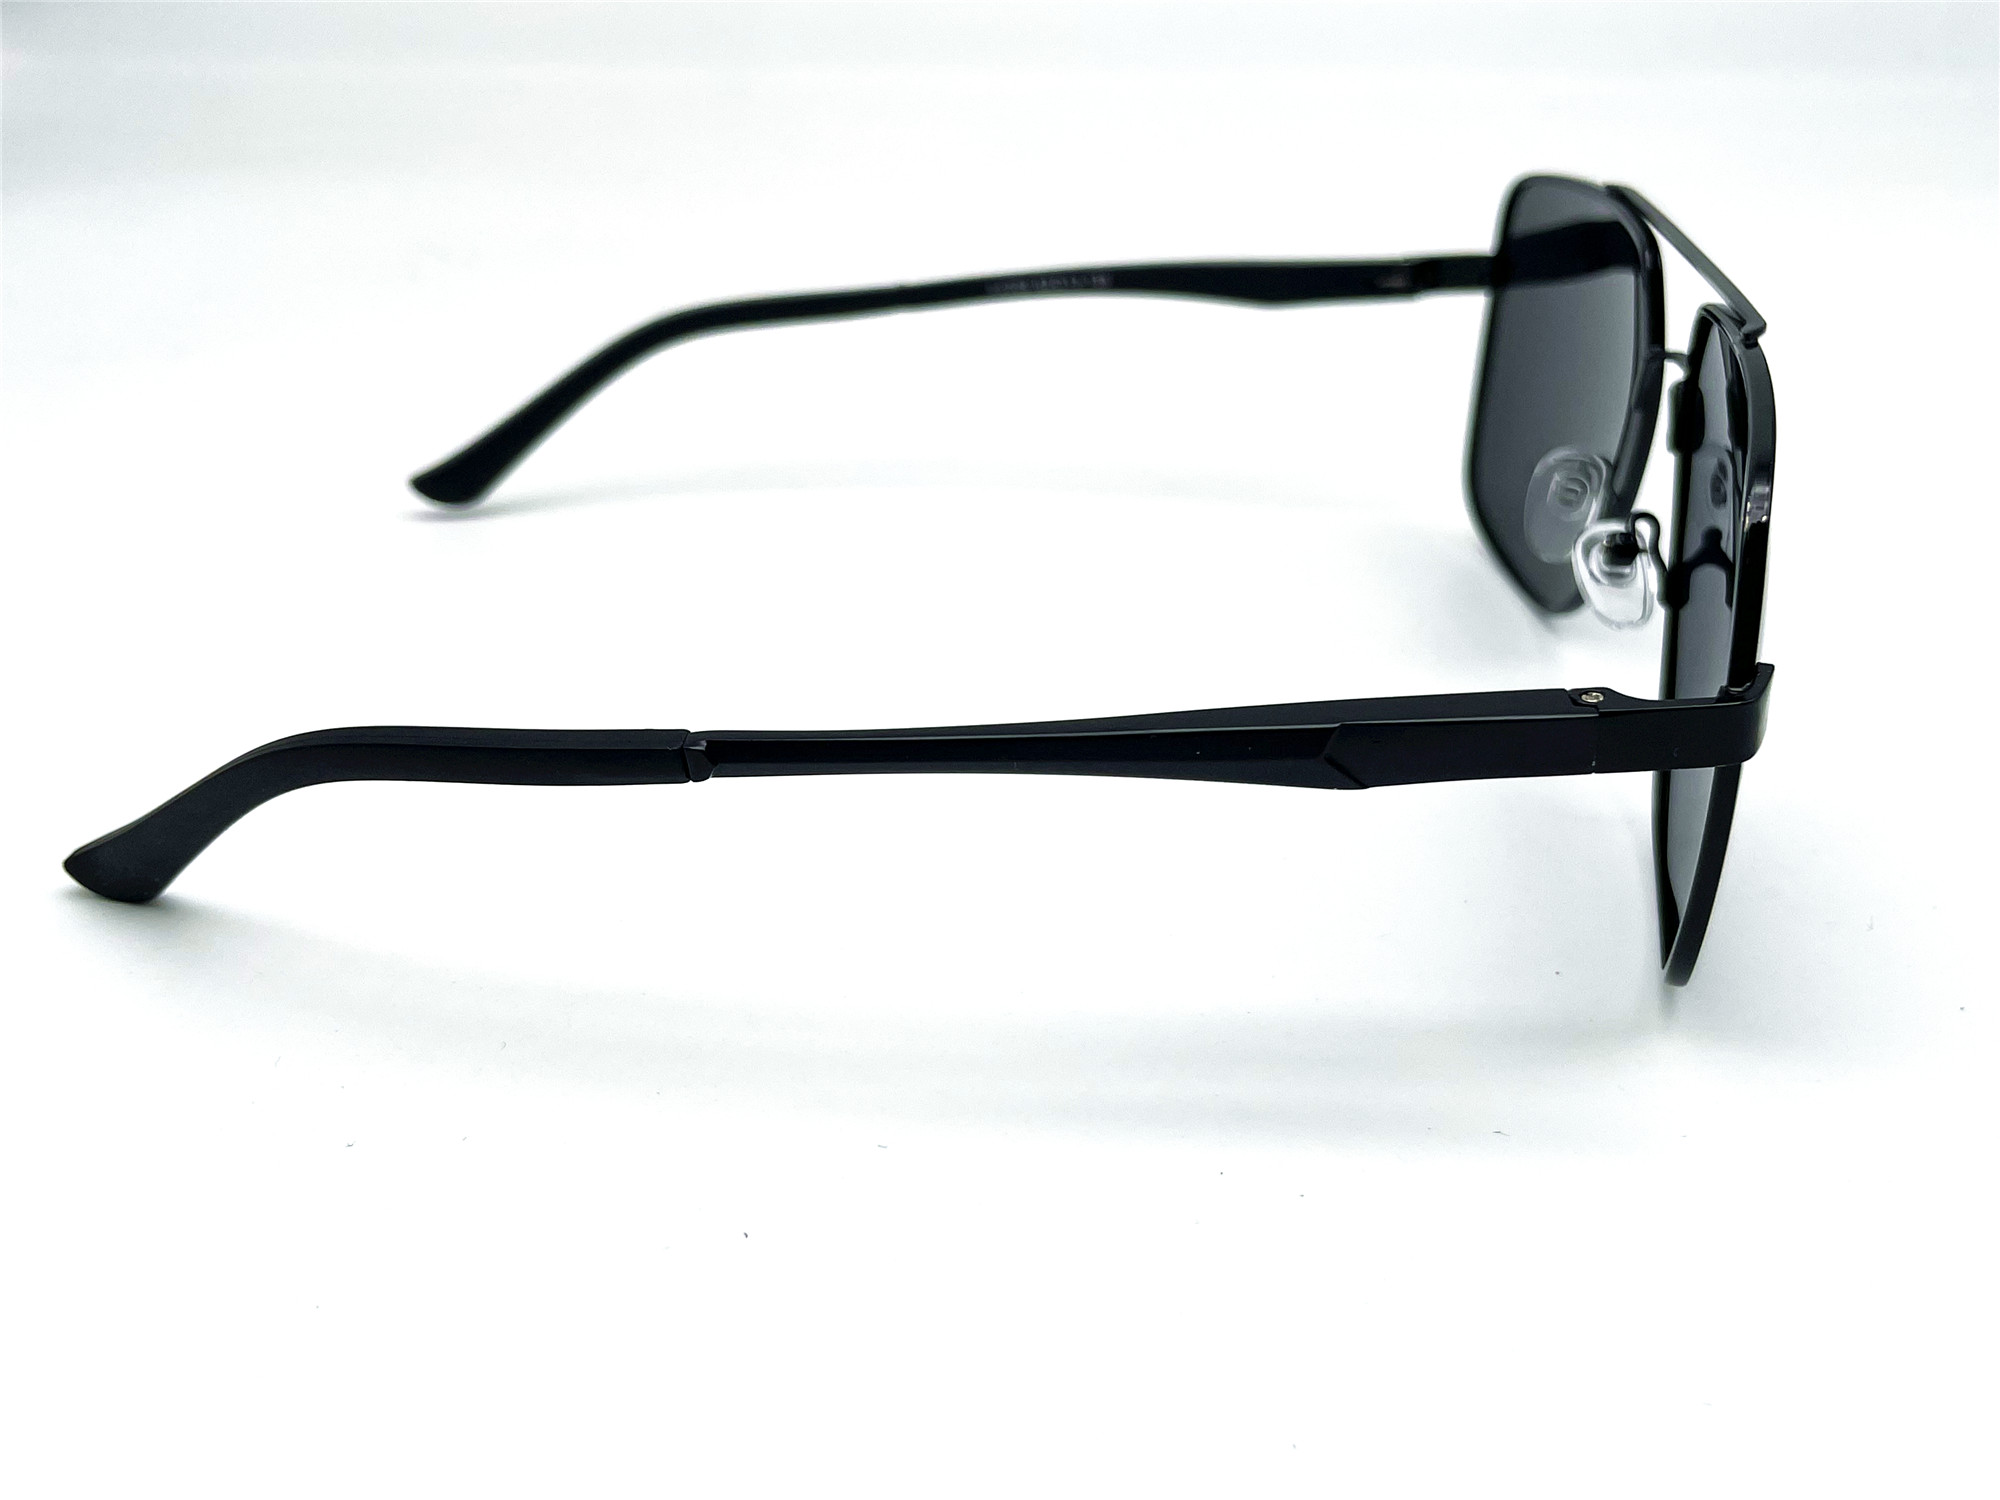  Солнцезащитные очки картинка Мужские Caipai Polarized Квадратные P4009-С1 